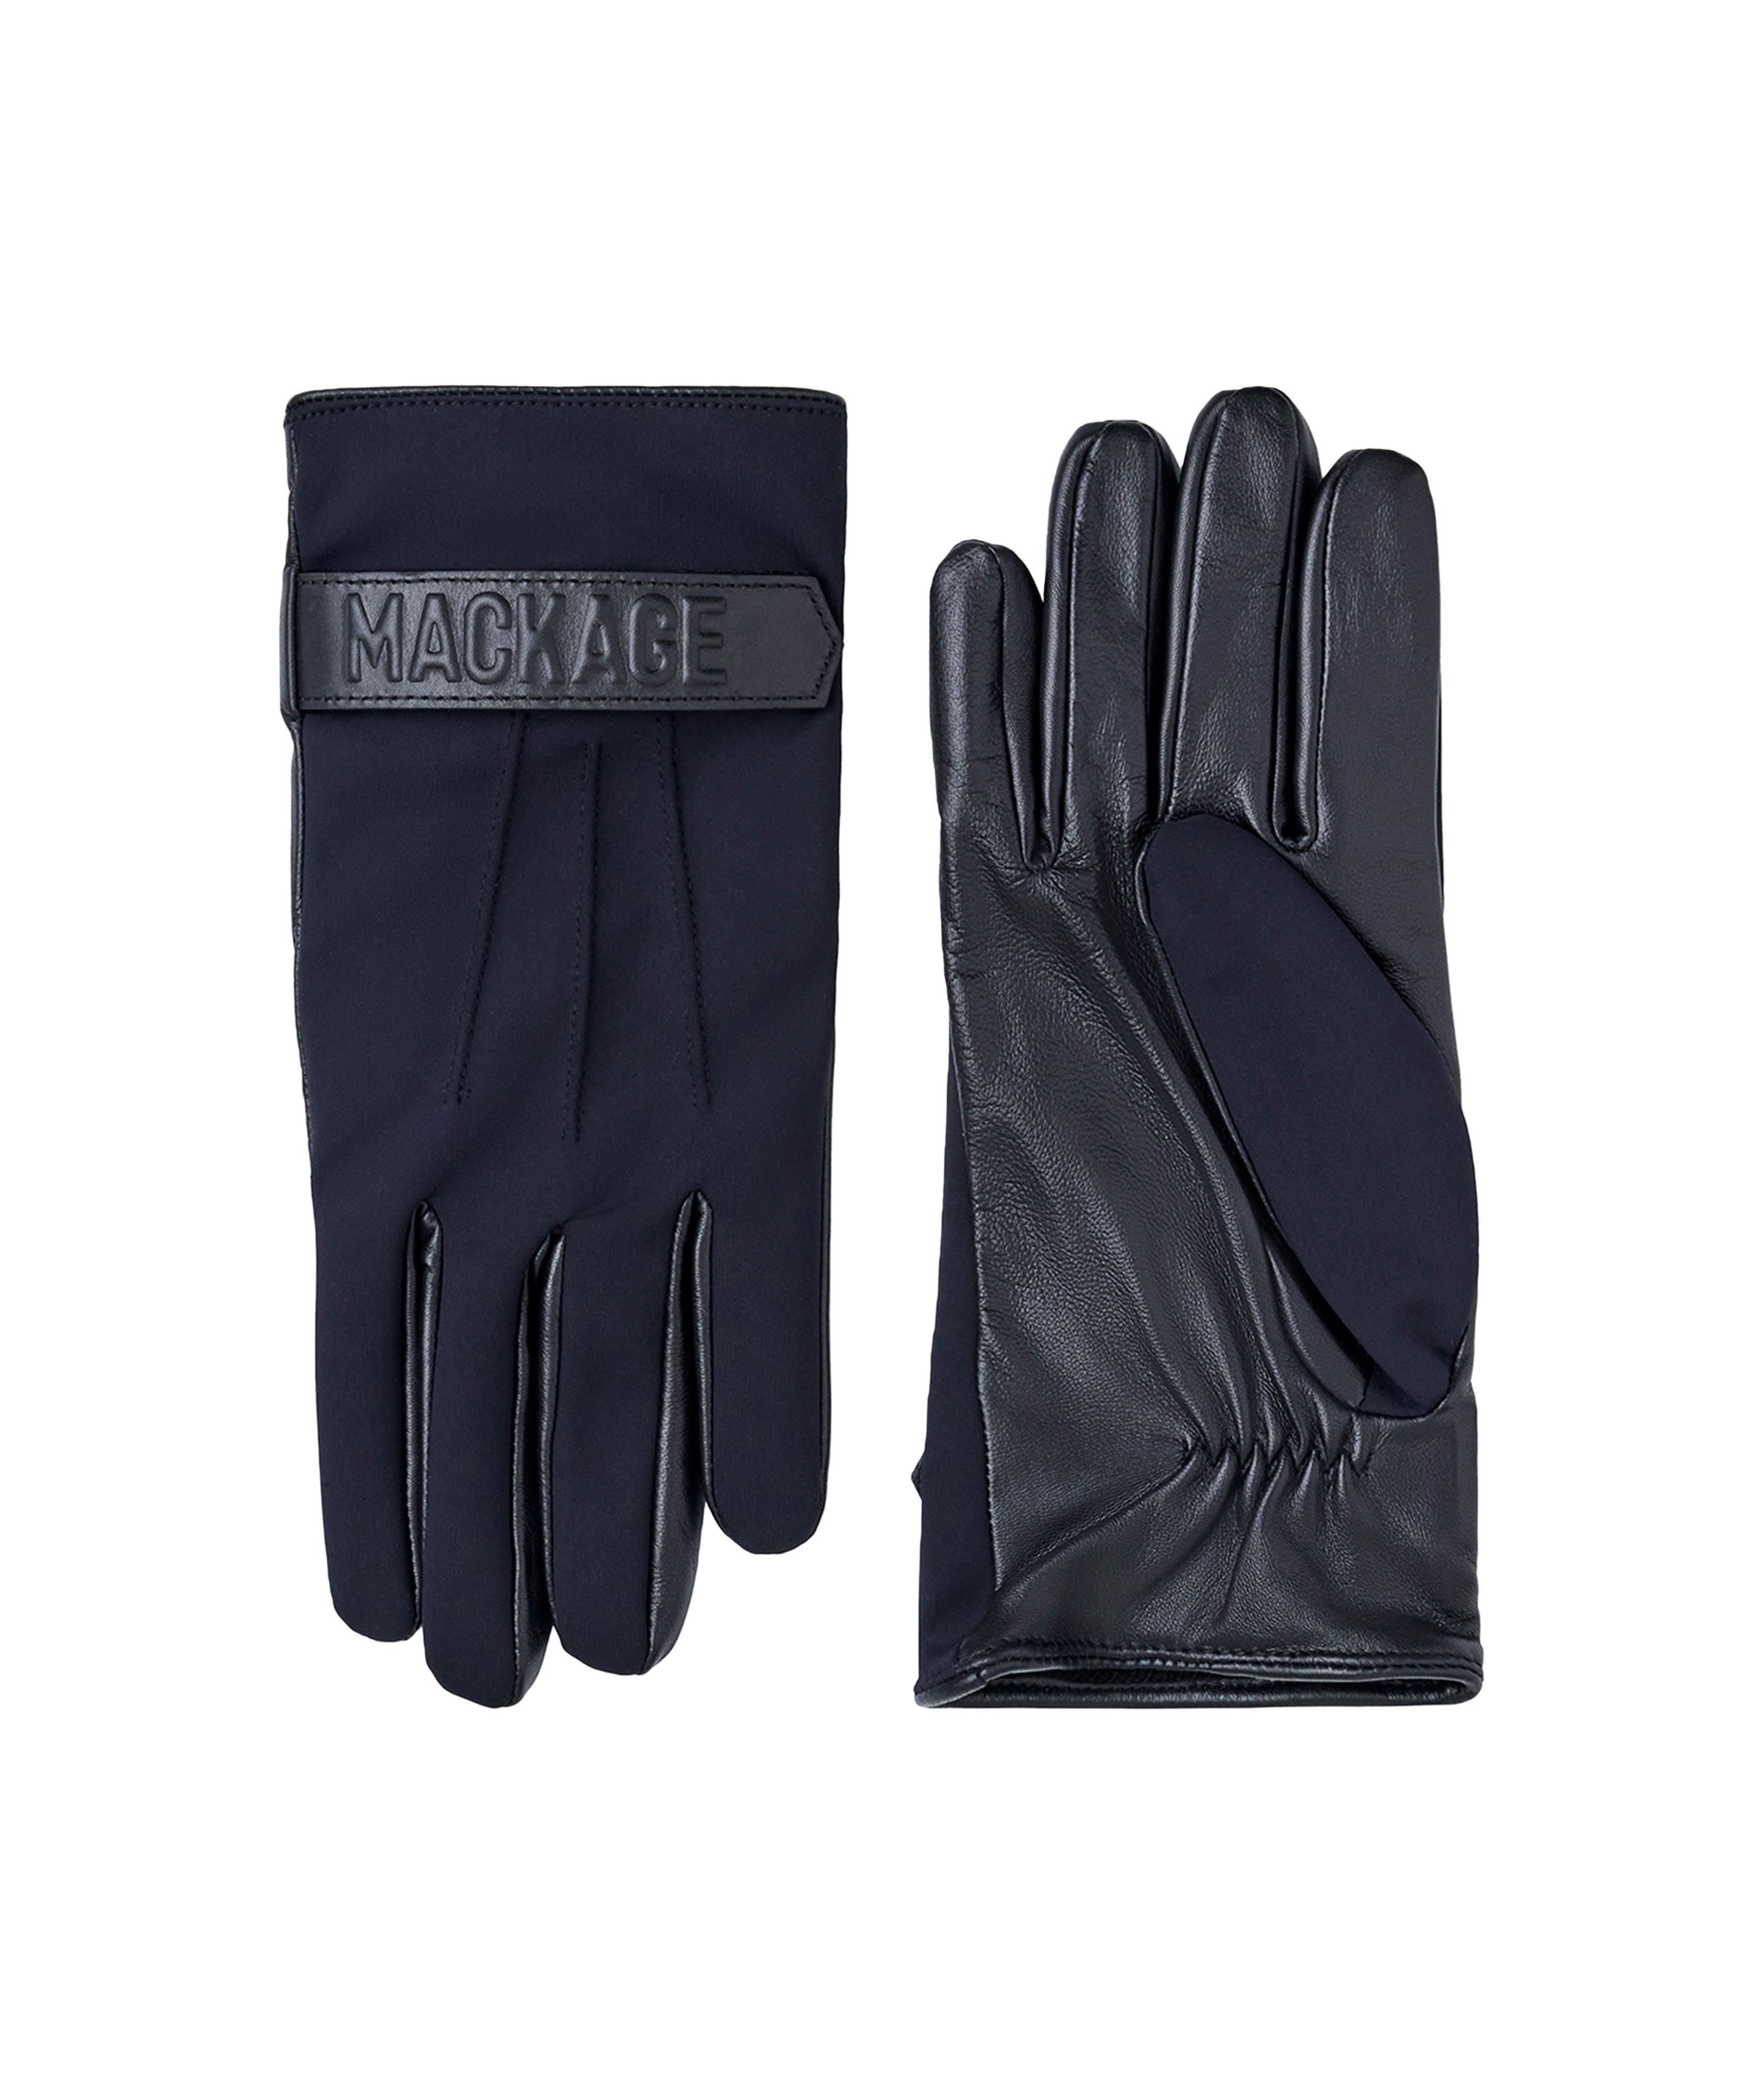 OZ Leather Logo Embossed Cashmere-Blend Gloves image 0